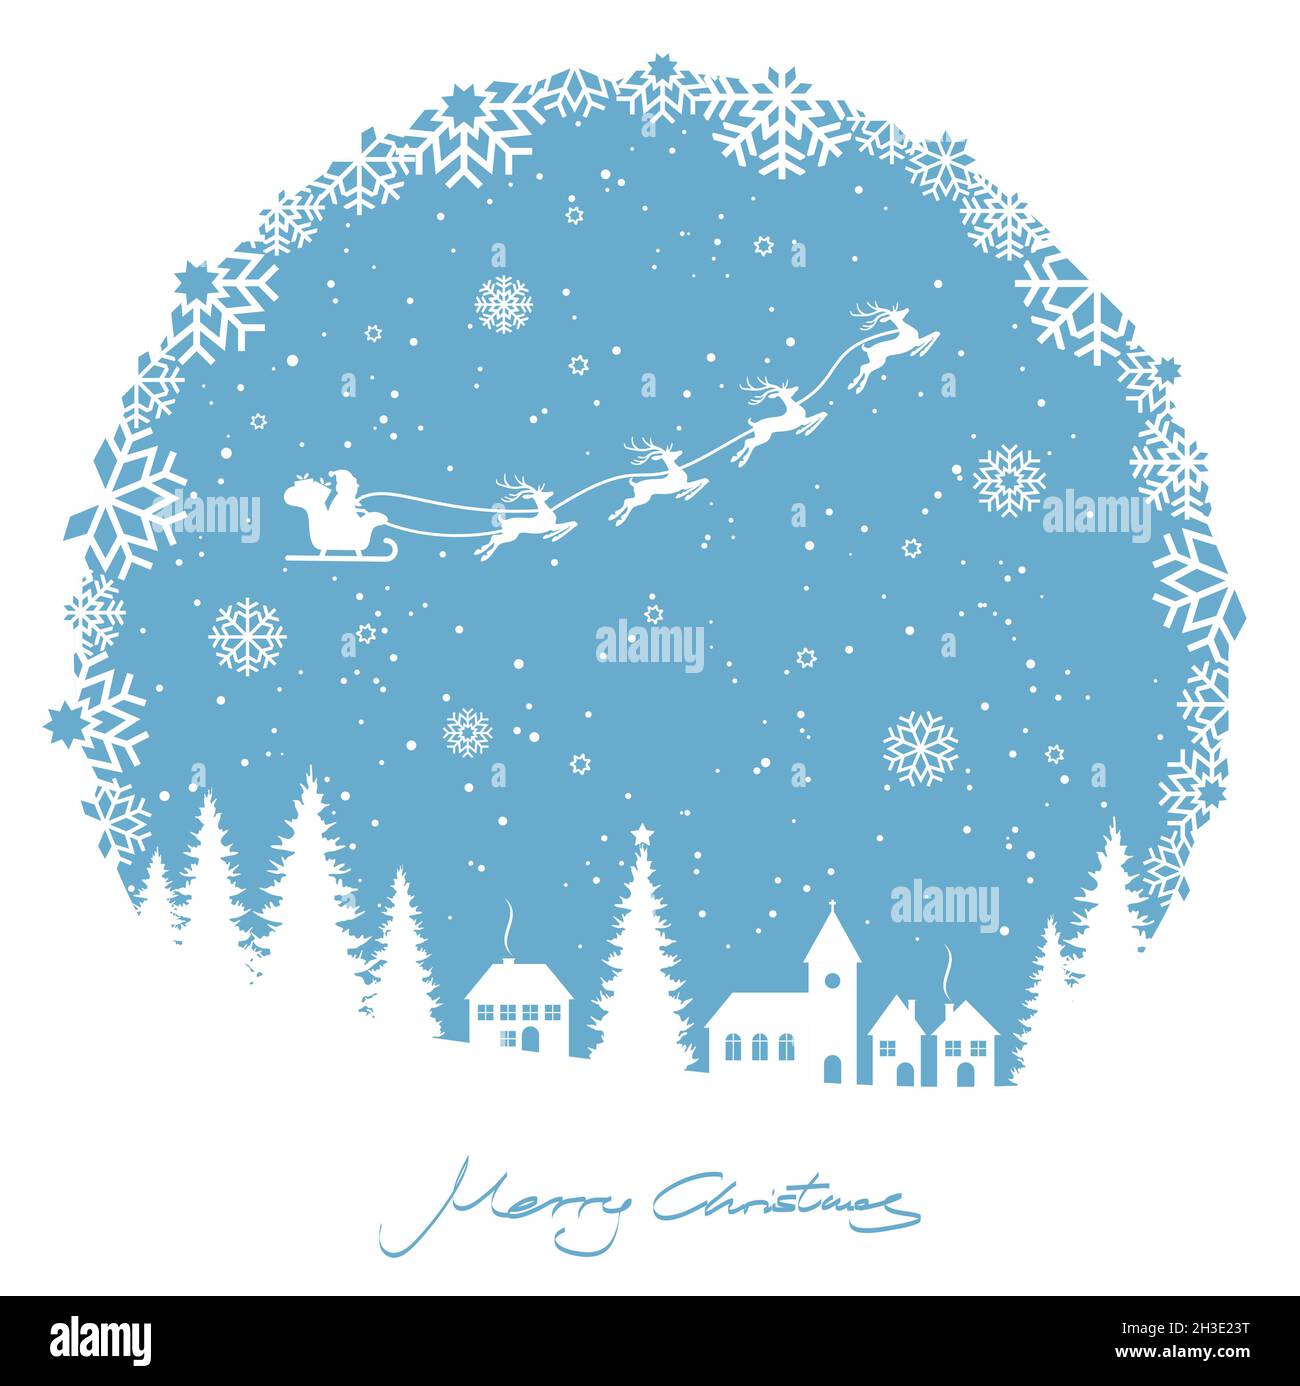 EPS 10 Vektordatei mit rundem Schneeflocken-Fenster zum weihnachtsfest-Hintergrund mit typischen Weihnachtselementen, Schneefall und farbigem Hintergrund mit Flyin Stock Vektor